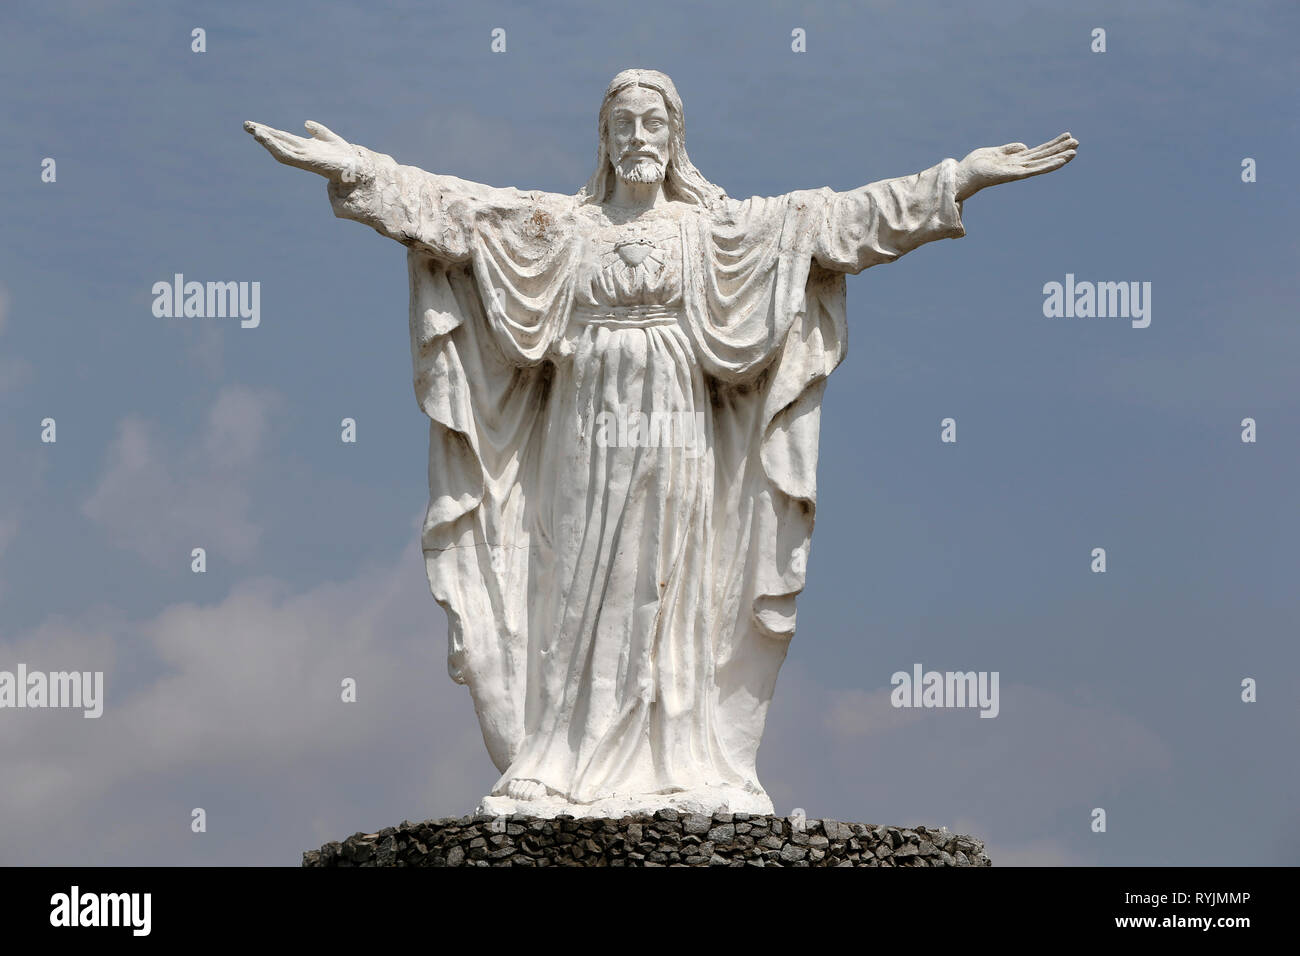 Jésus Christ statue de Saint Paul's cathédrale catholique composé, Abidjan, Côte d'Ivoire. Banque D'Images